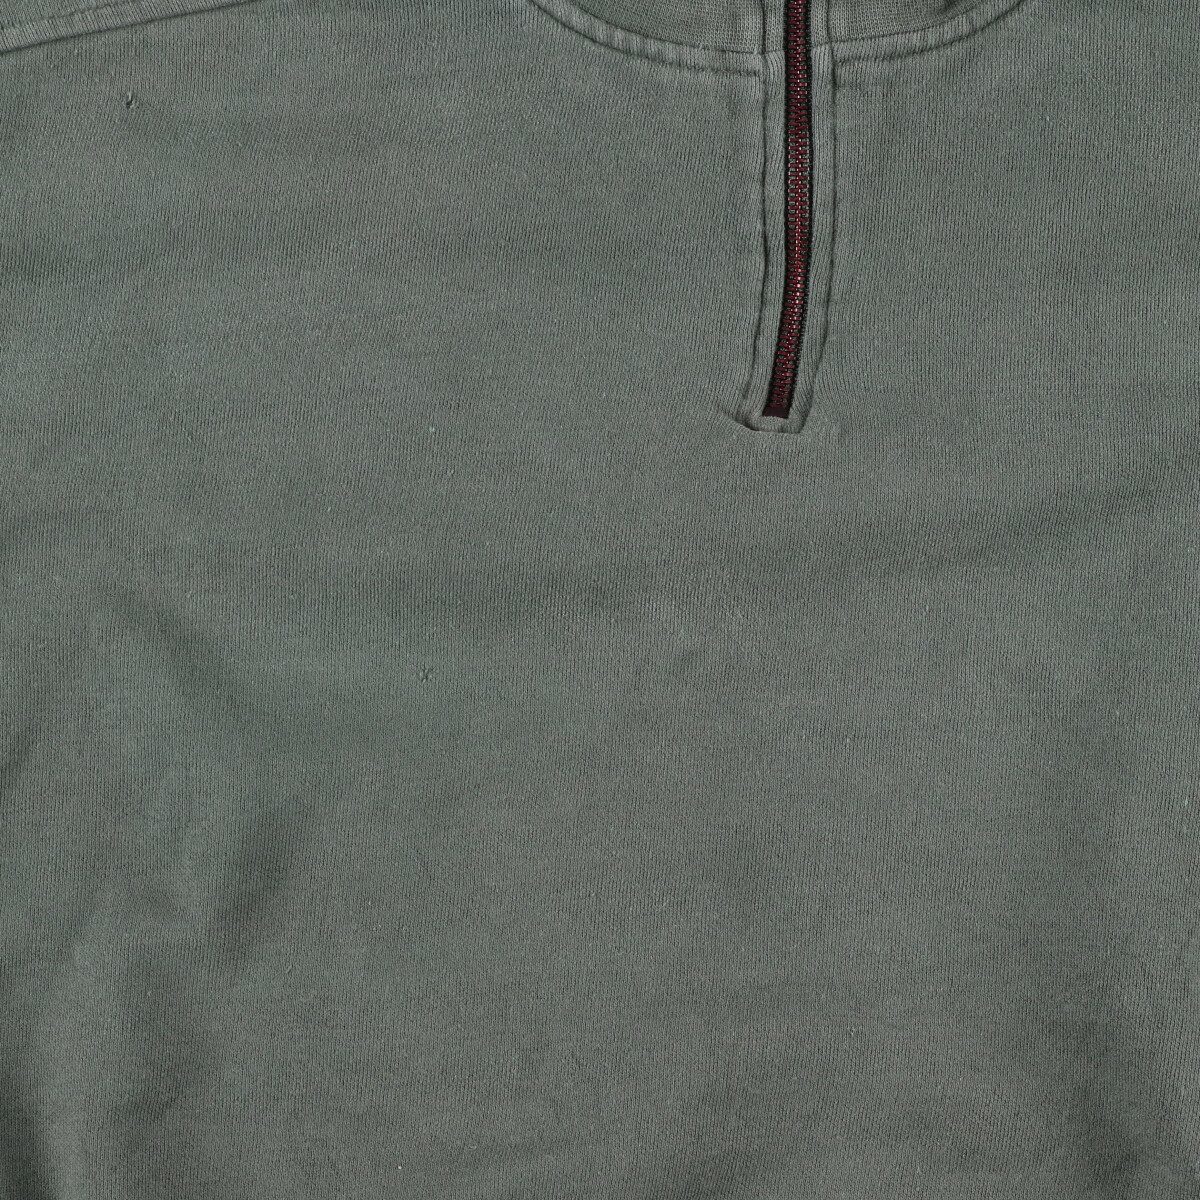  б/у одежда Nike NIKE GOLF Golf половина Zip спортивная фуфайка футболка мужской XL /eaa364355